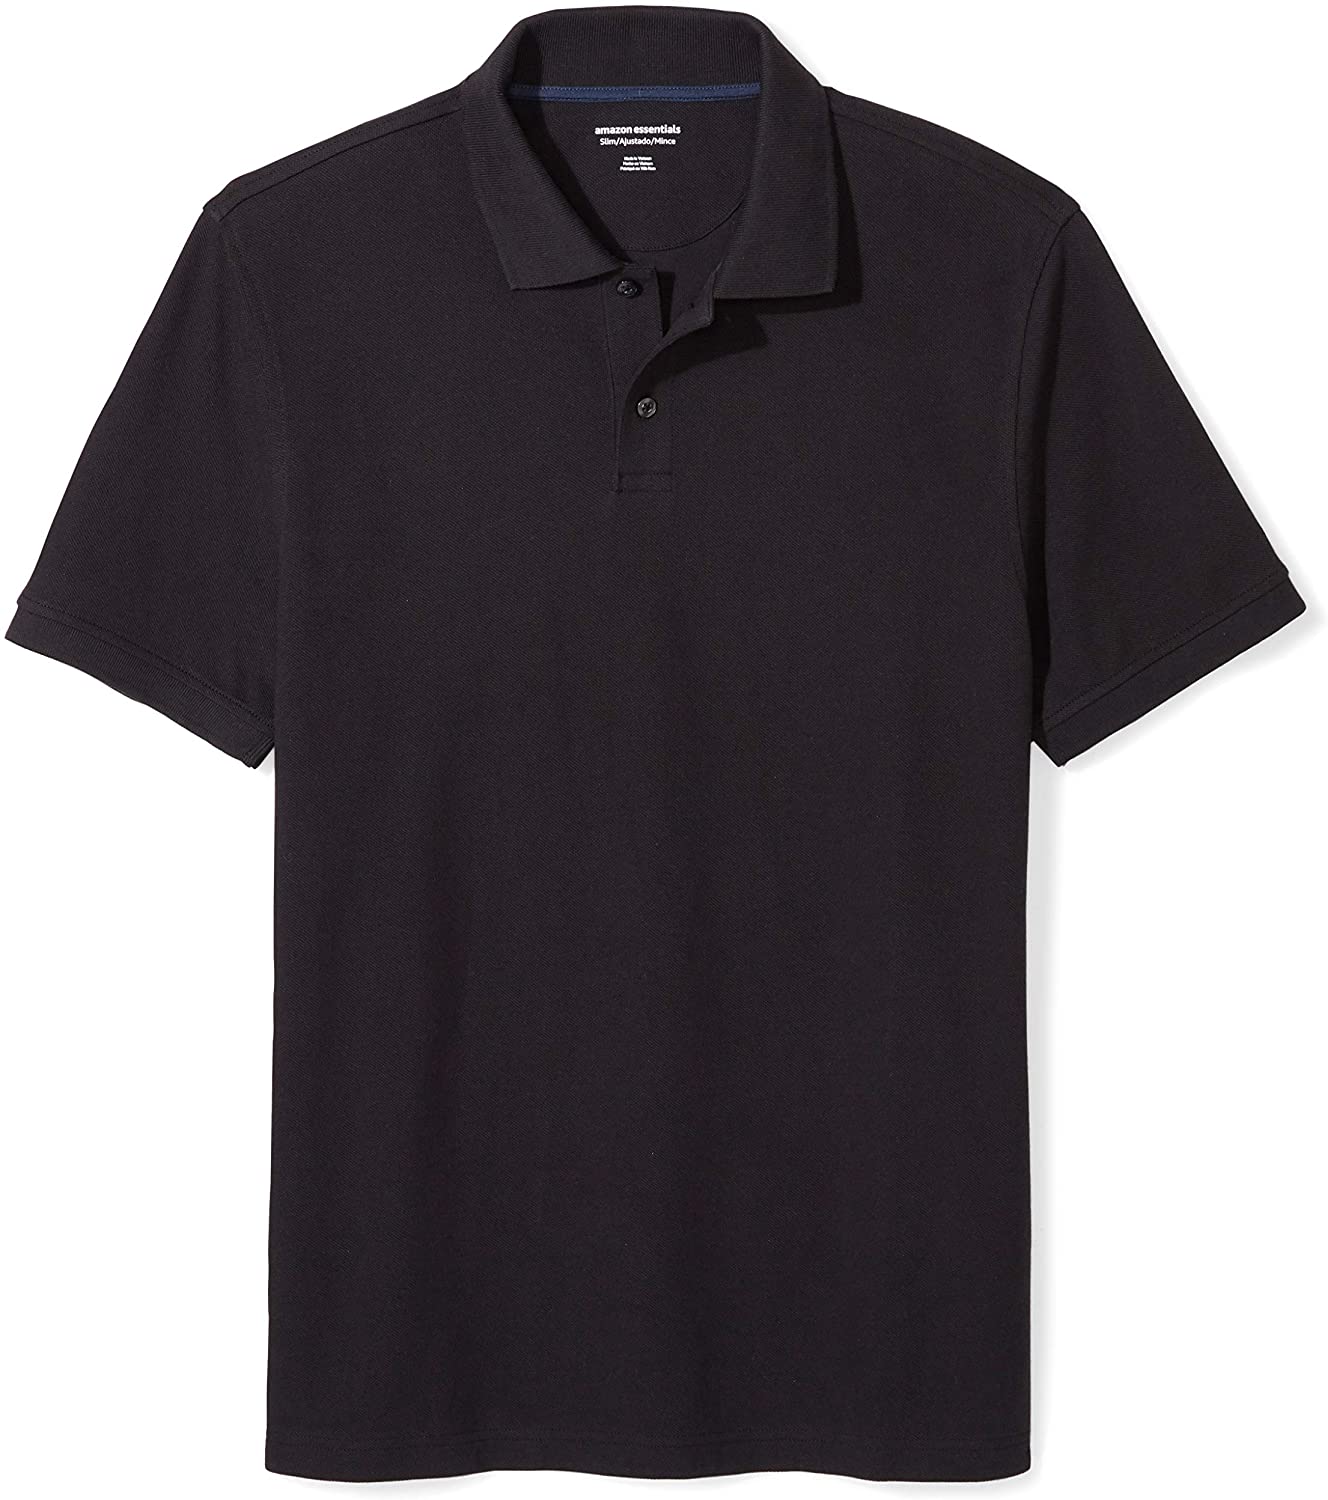 Essentials Men's Slim-Fit Cotton Pique Polo Shirt,, Black, Size X-Large ...